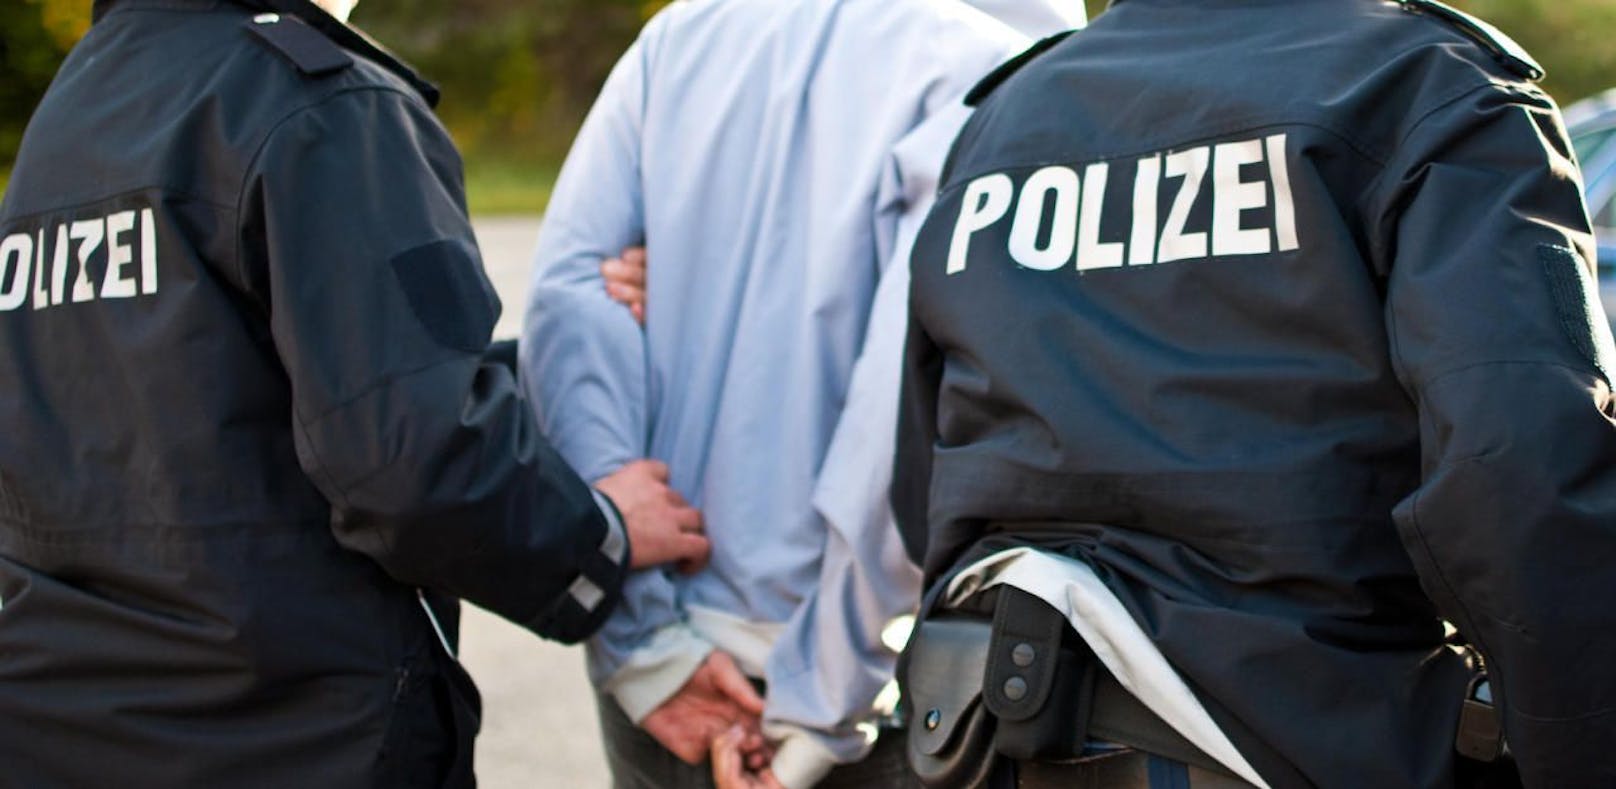 Nach "Heil Hitler" festgenommen: Der Salzburger wird nach dem Verbotsgesetz angezeigt (Symbolfoto)